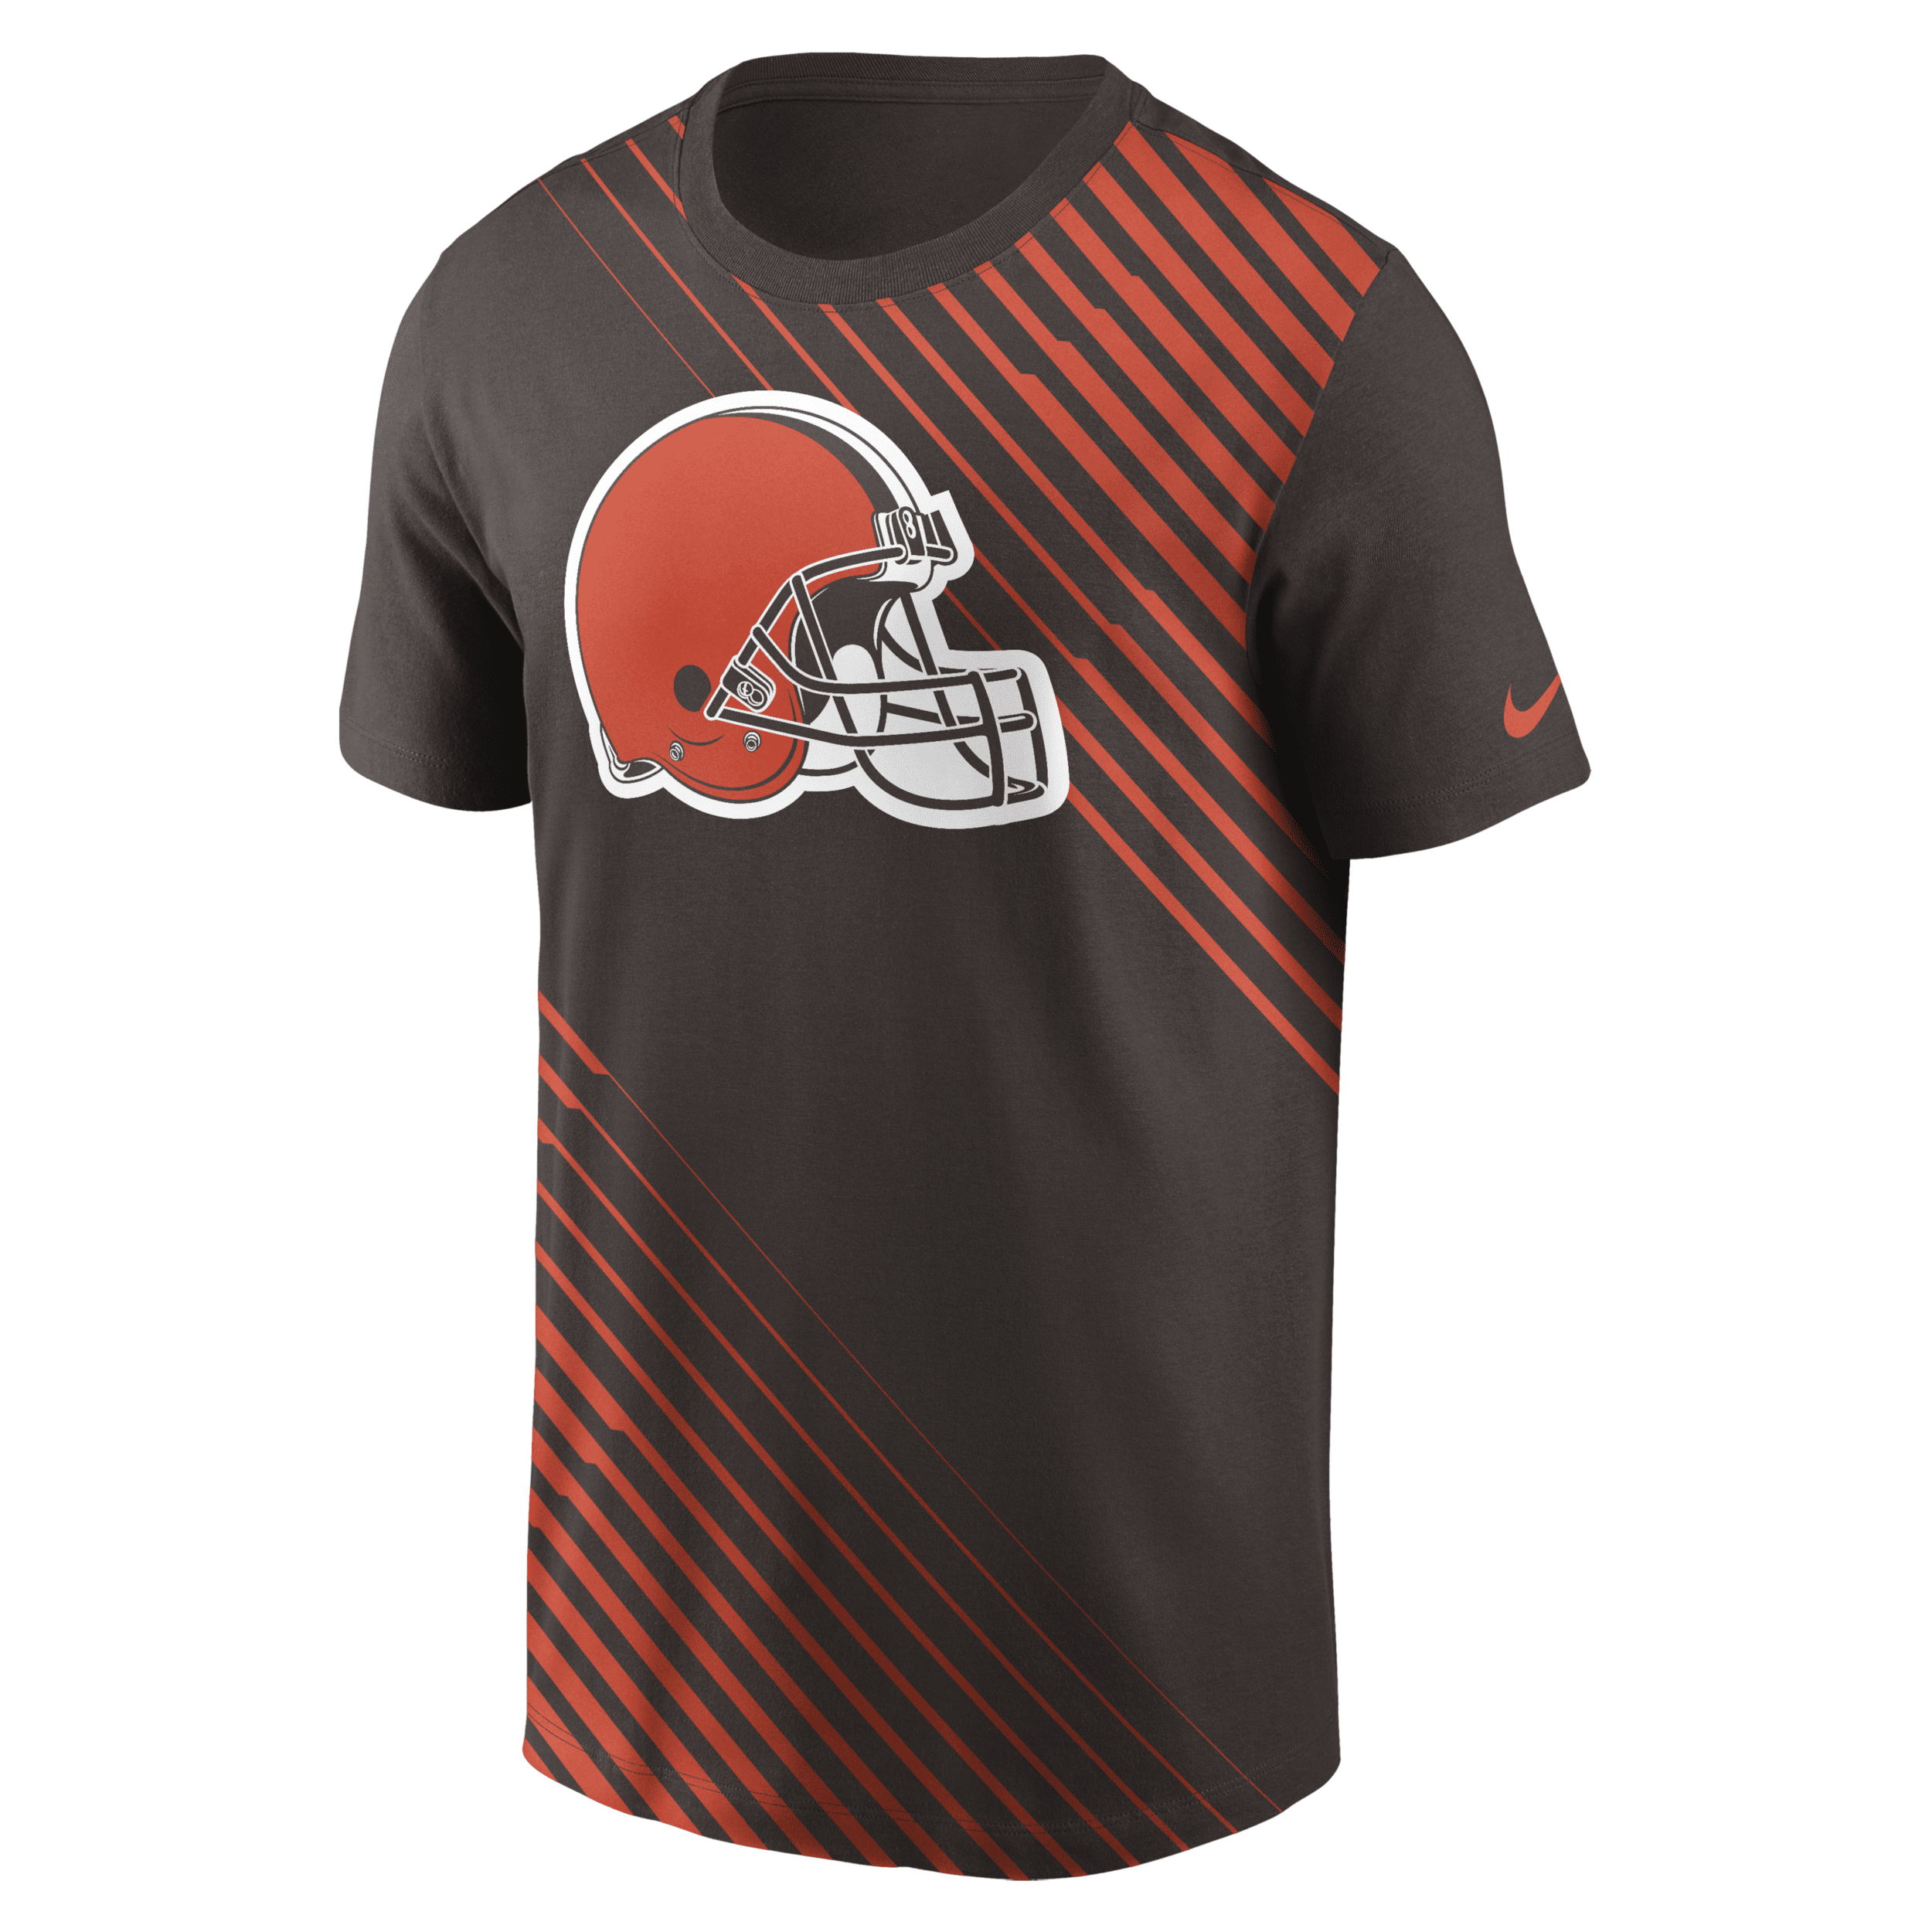 Nike Men's Yard Line (nfl Cleveland Browns) T-shirt